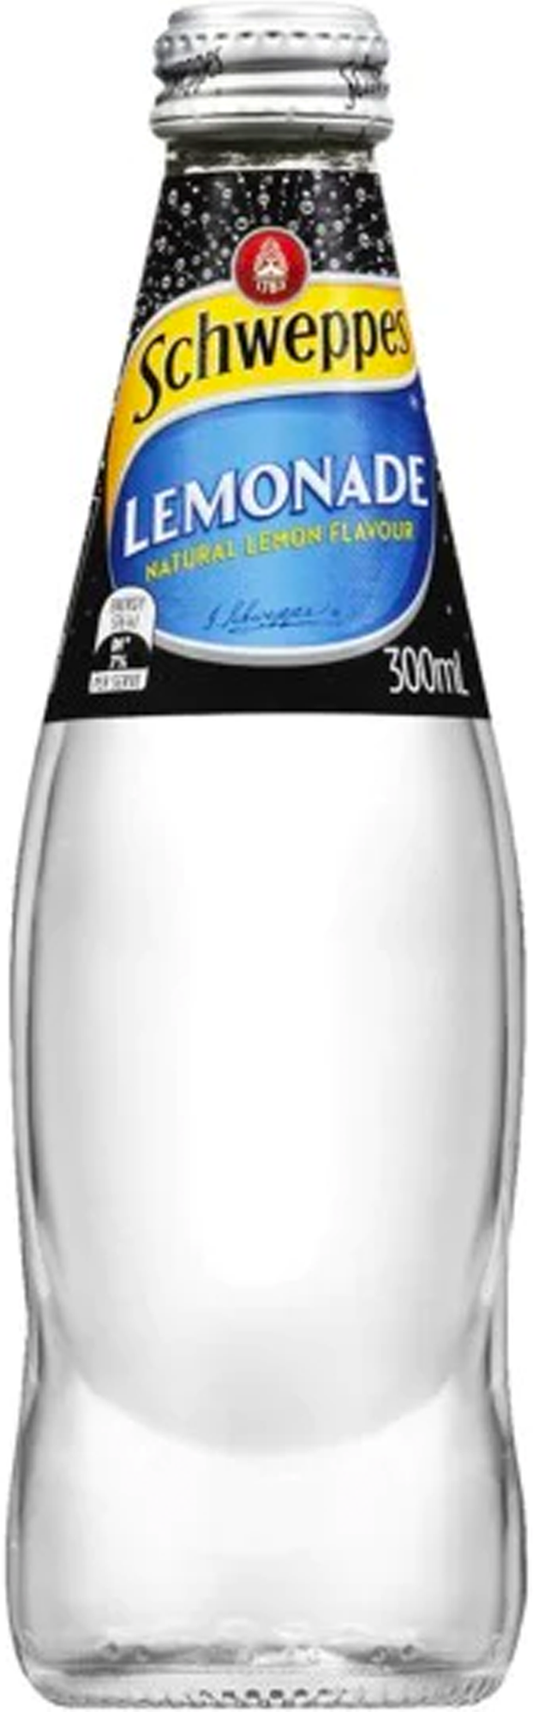 Schweppes Lemonade Glass Bottle 300ml